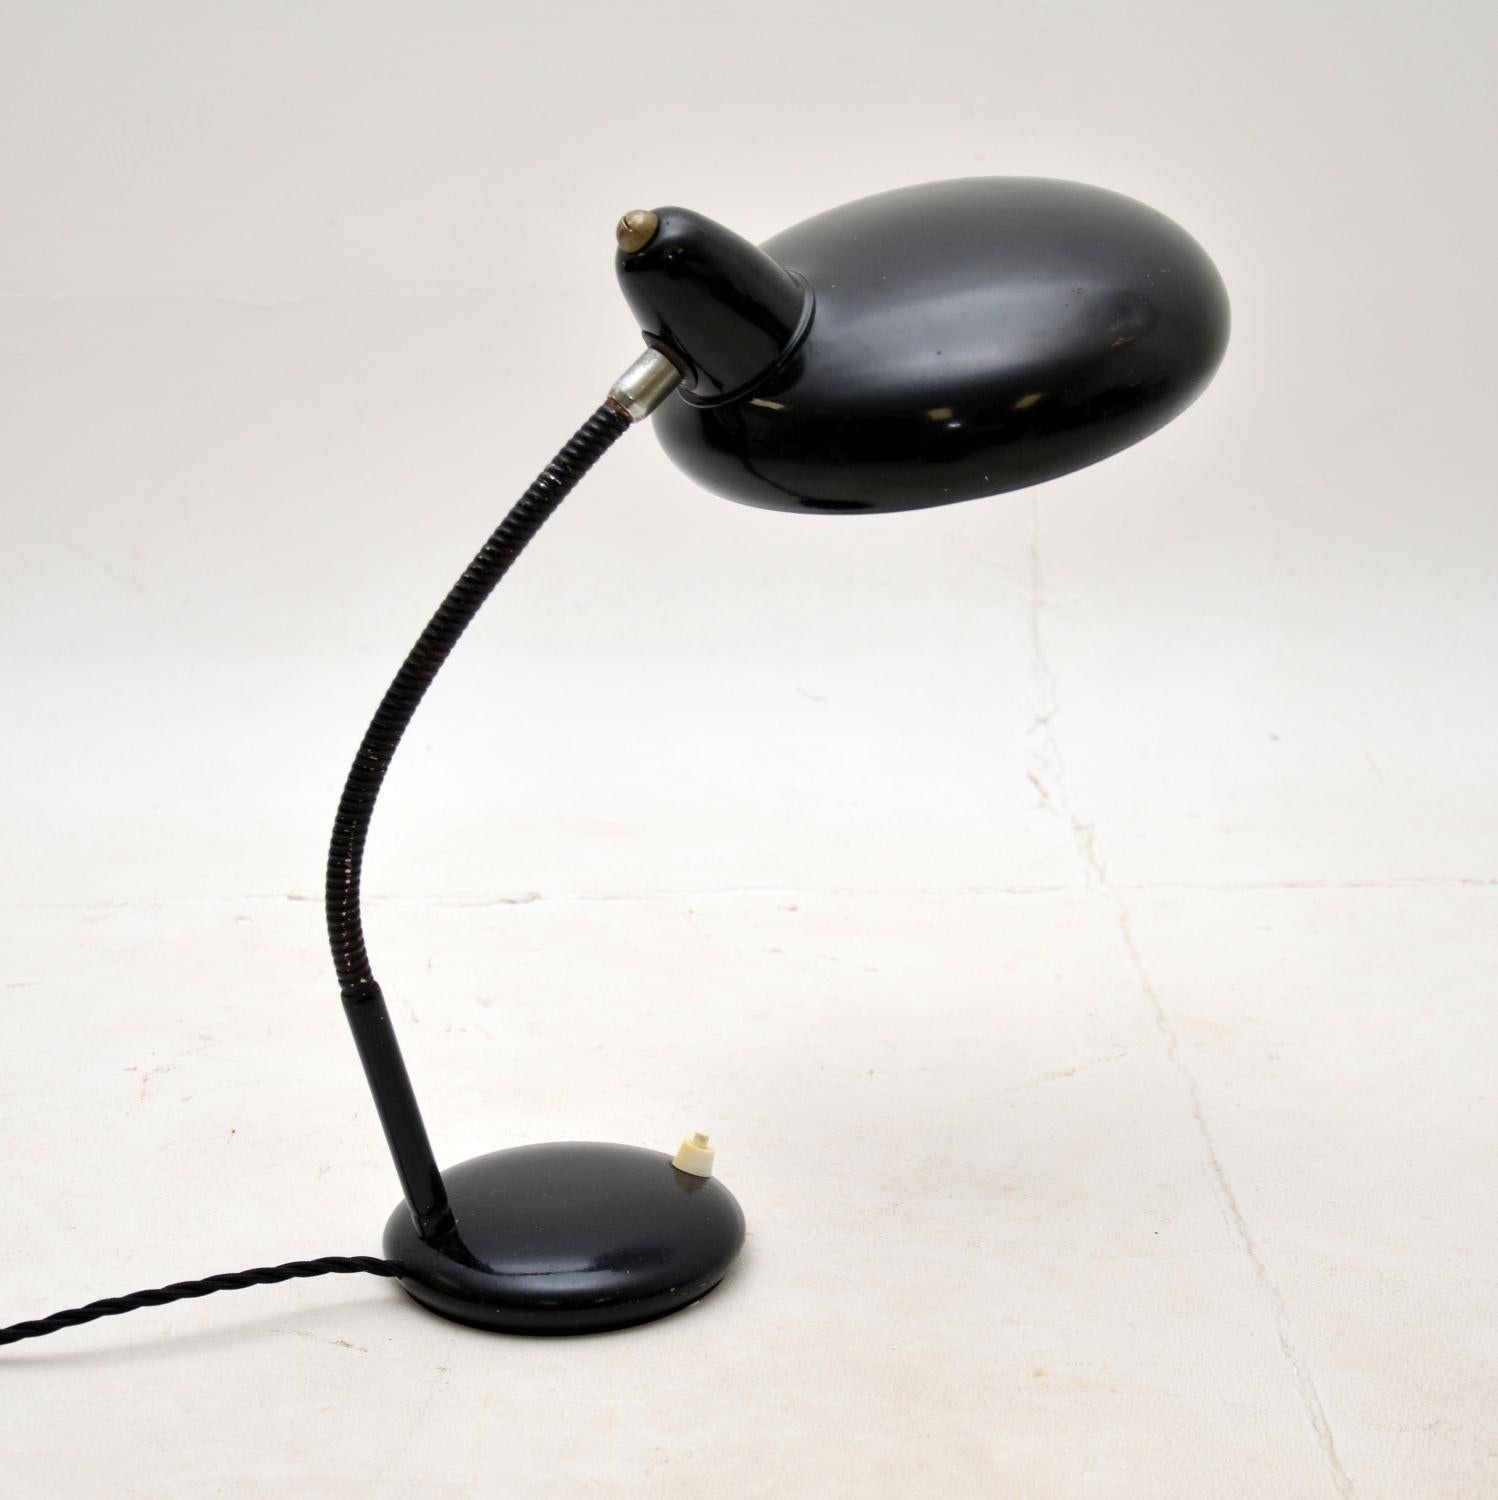 Superbe lampe de bureau Bauhaus vintage, probablement fabriquée par Escolux en Allemagne dans les années 1930.

La qualité est fantastique, le design est magnifique et la taille est belle et pratique.

L'état est excellent pour son âge, avec juste